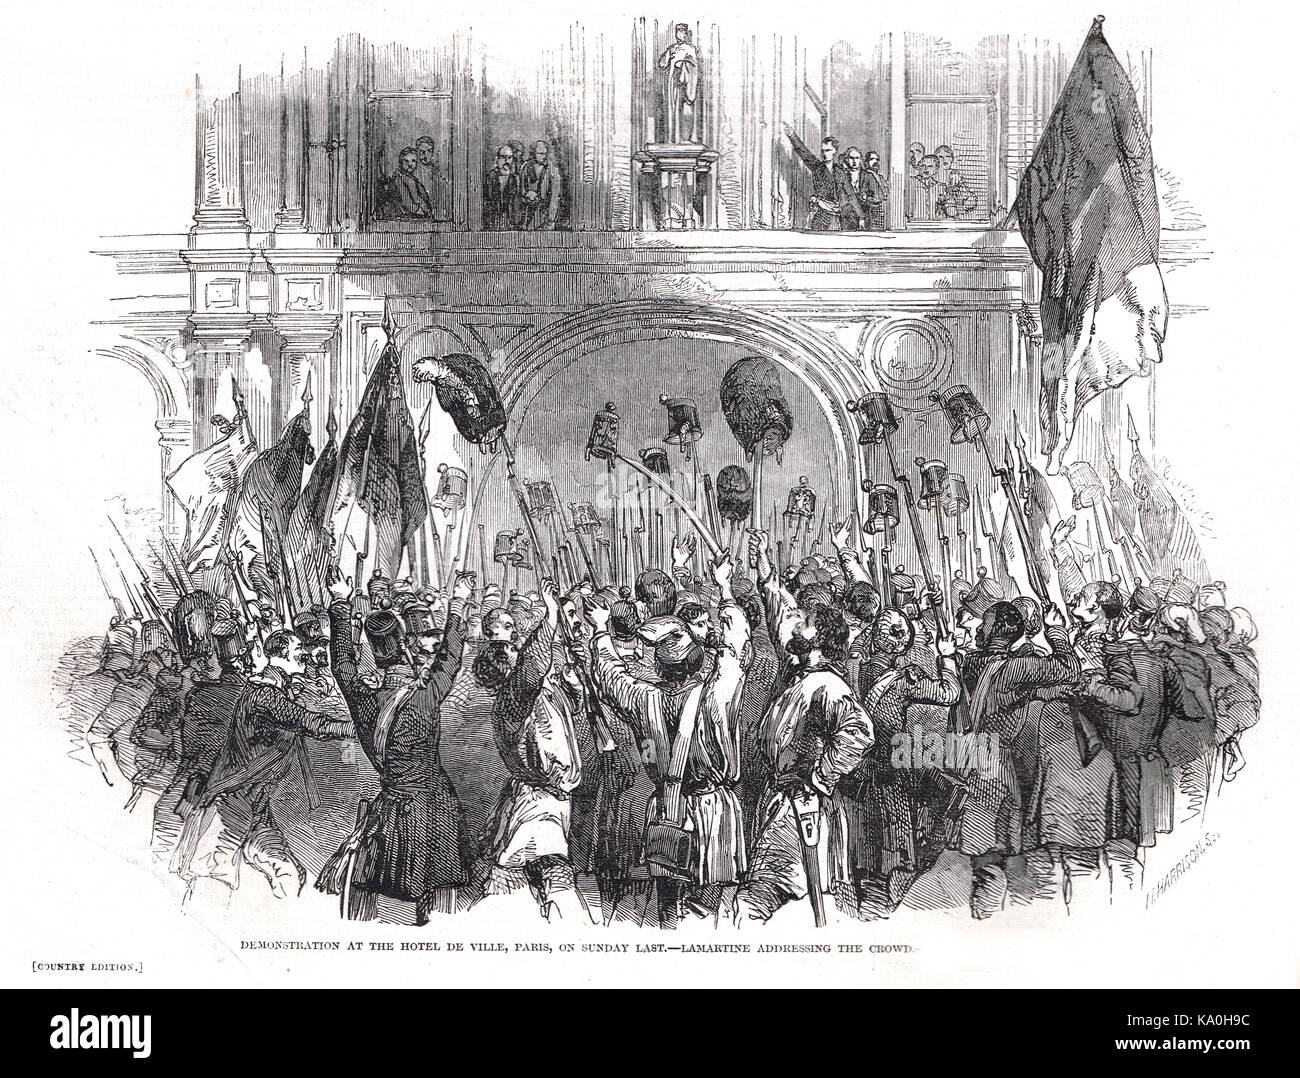 Lamartine s'adressant à la foule, démonstration à l'Hôtel de Ville, Paris, France, révolution française de 1848 Banque D'Images